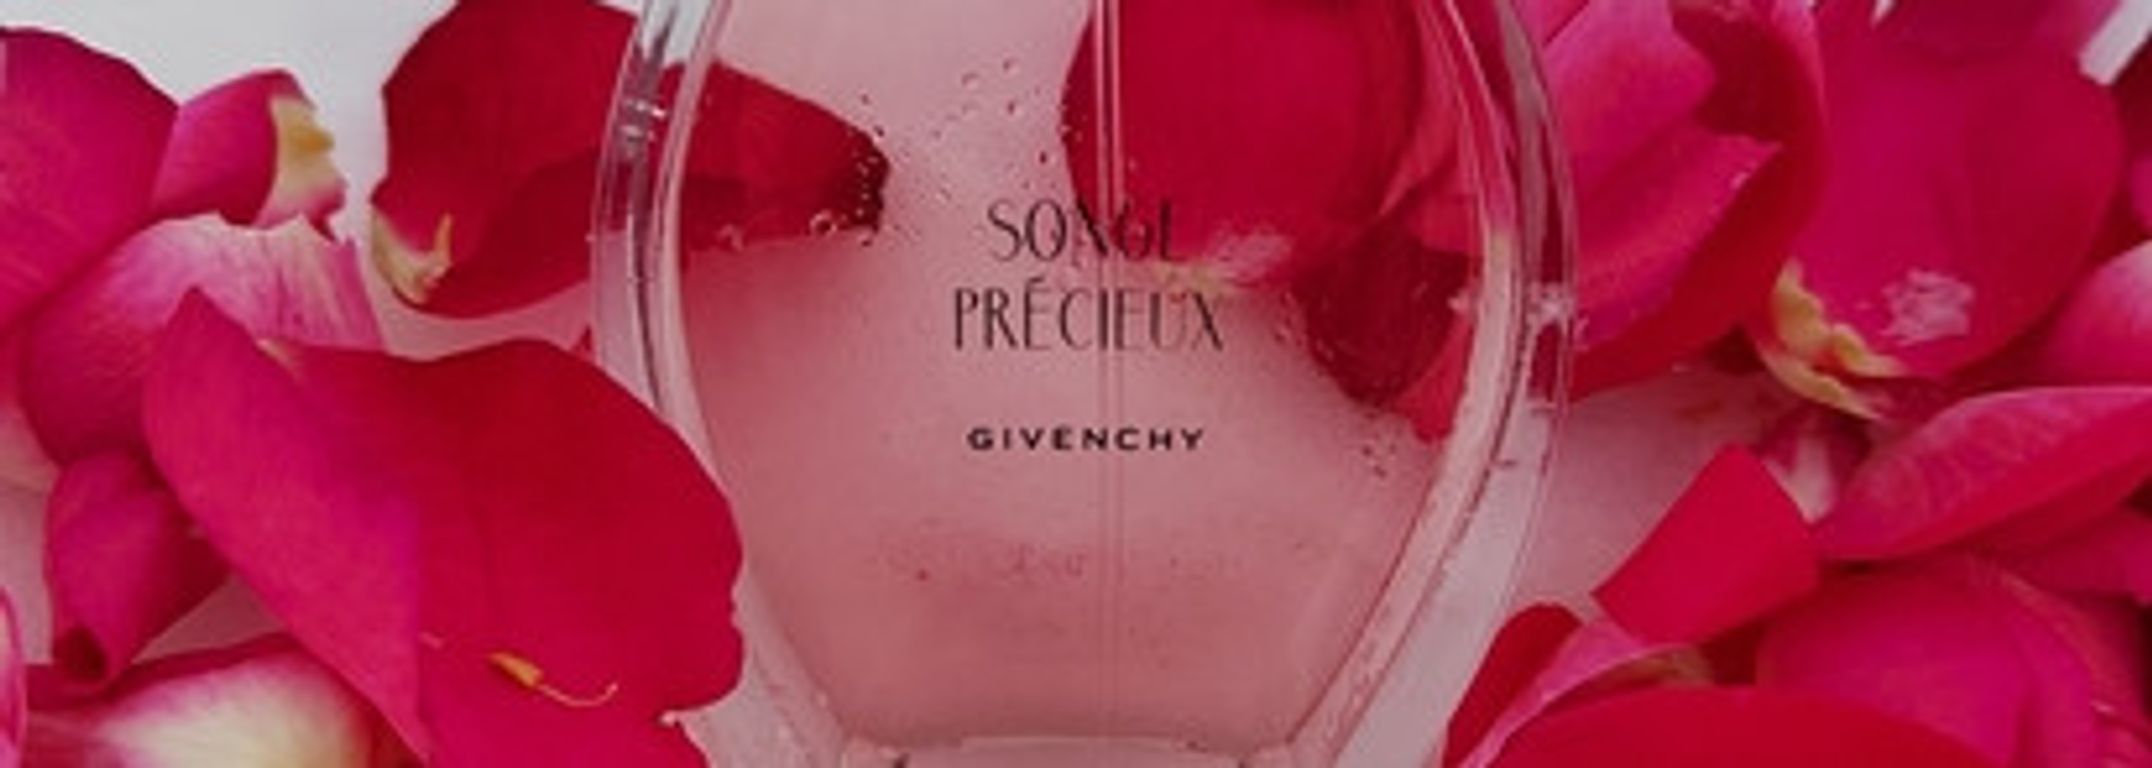 Givenchy Songe Precieux Eau de toilette